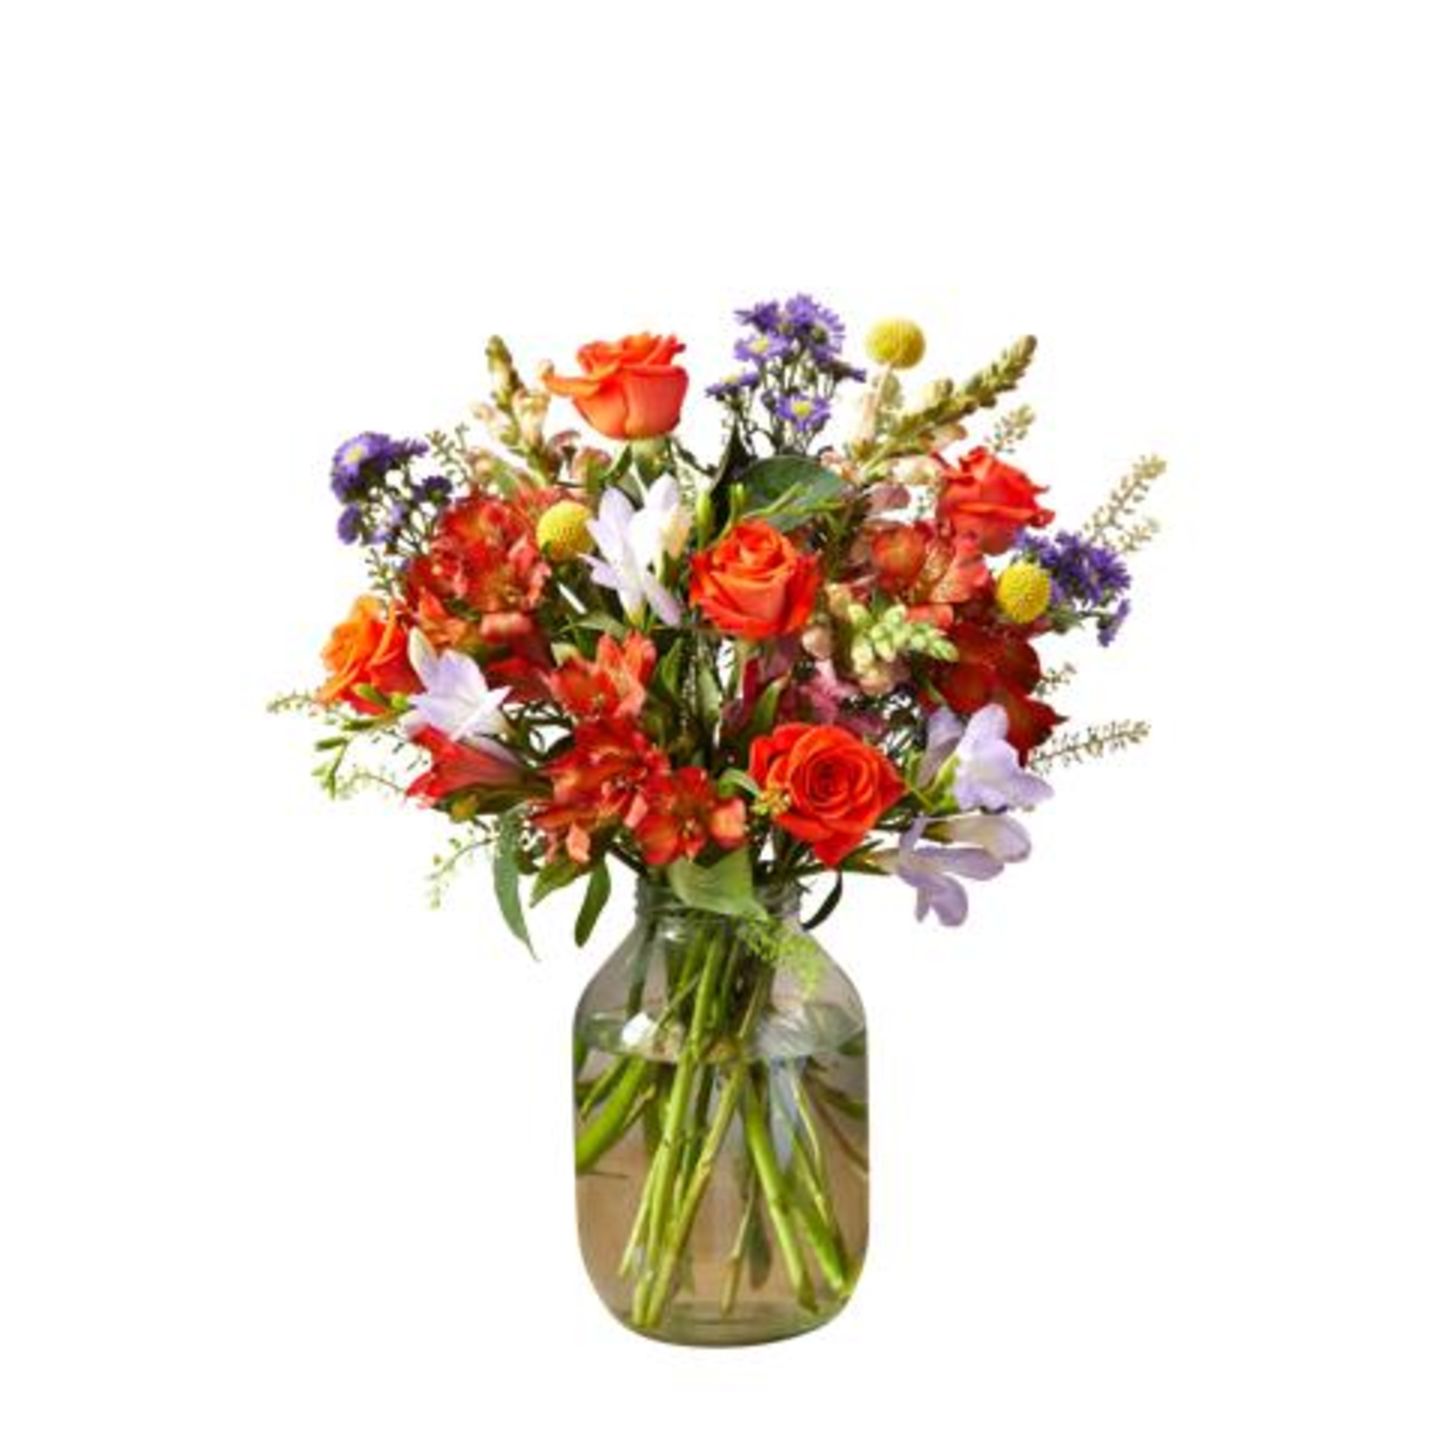 Blumen machen einfach alles besser. Und wer viel Zuhause ist, der kann den Strauß immerhin jeden Tag bewundern. Das ist doch eine Win-Win-Situation, oder?! Dieses wunderschöne Bouquet gibt's zum Beispiel im Geschenkset bei Bloom & Wild für rund 42 Euro.